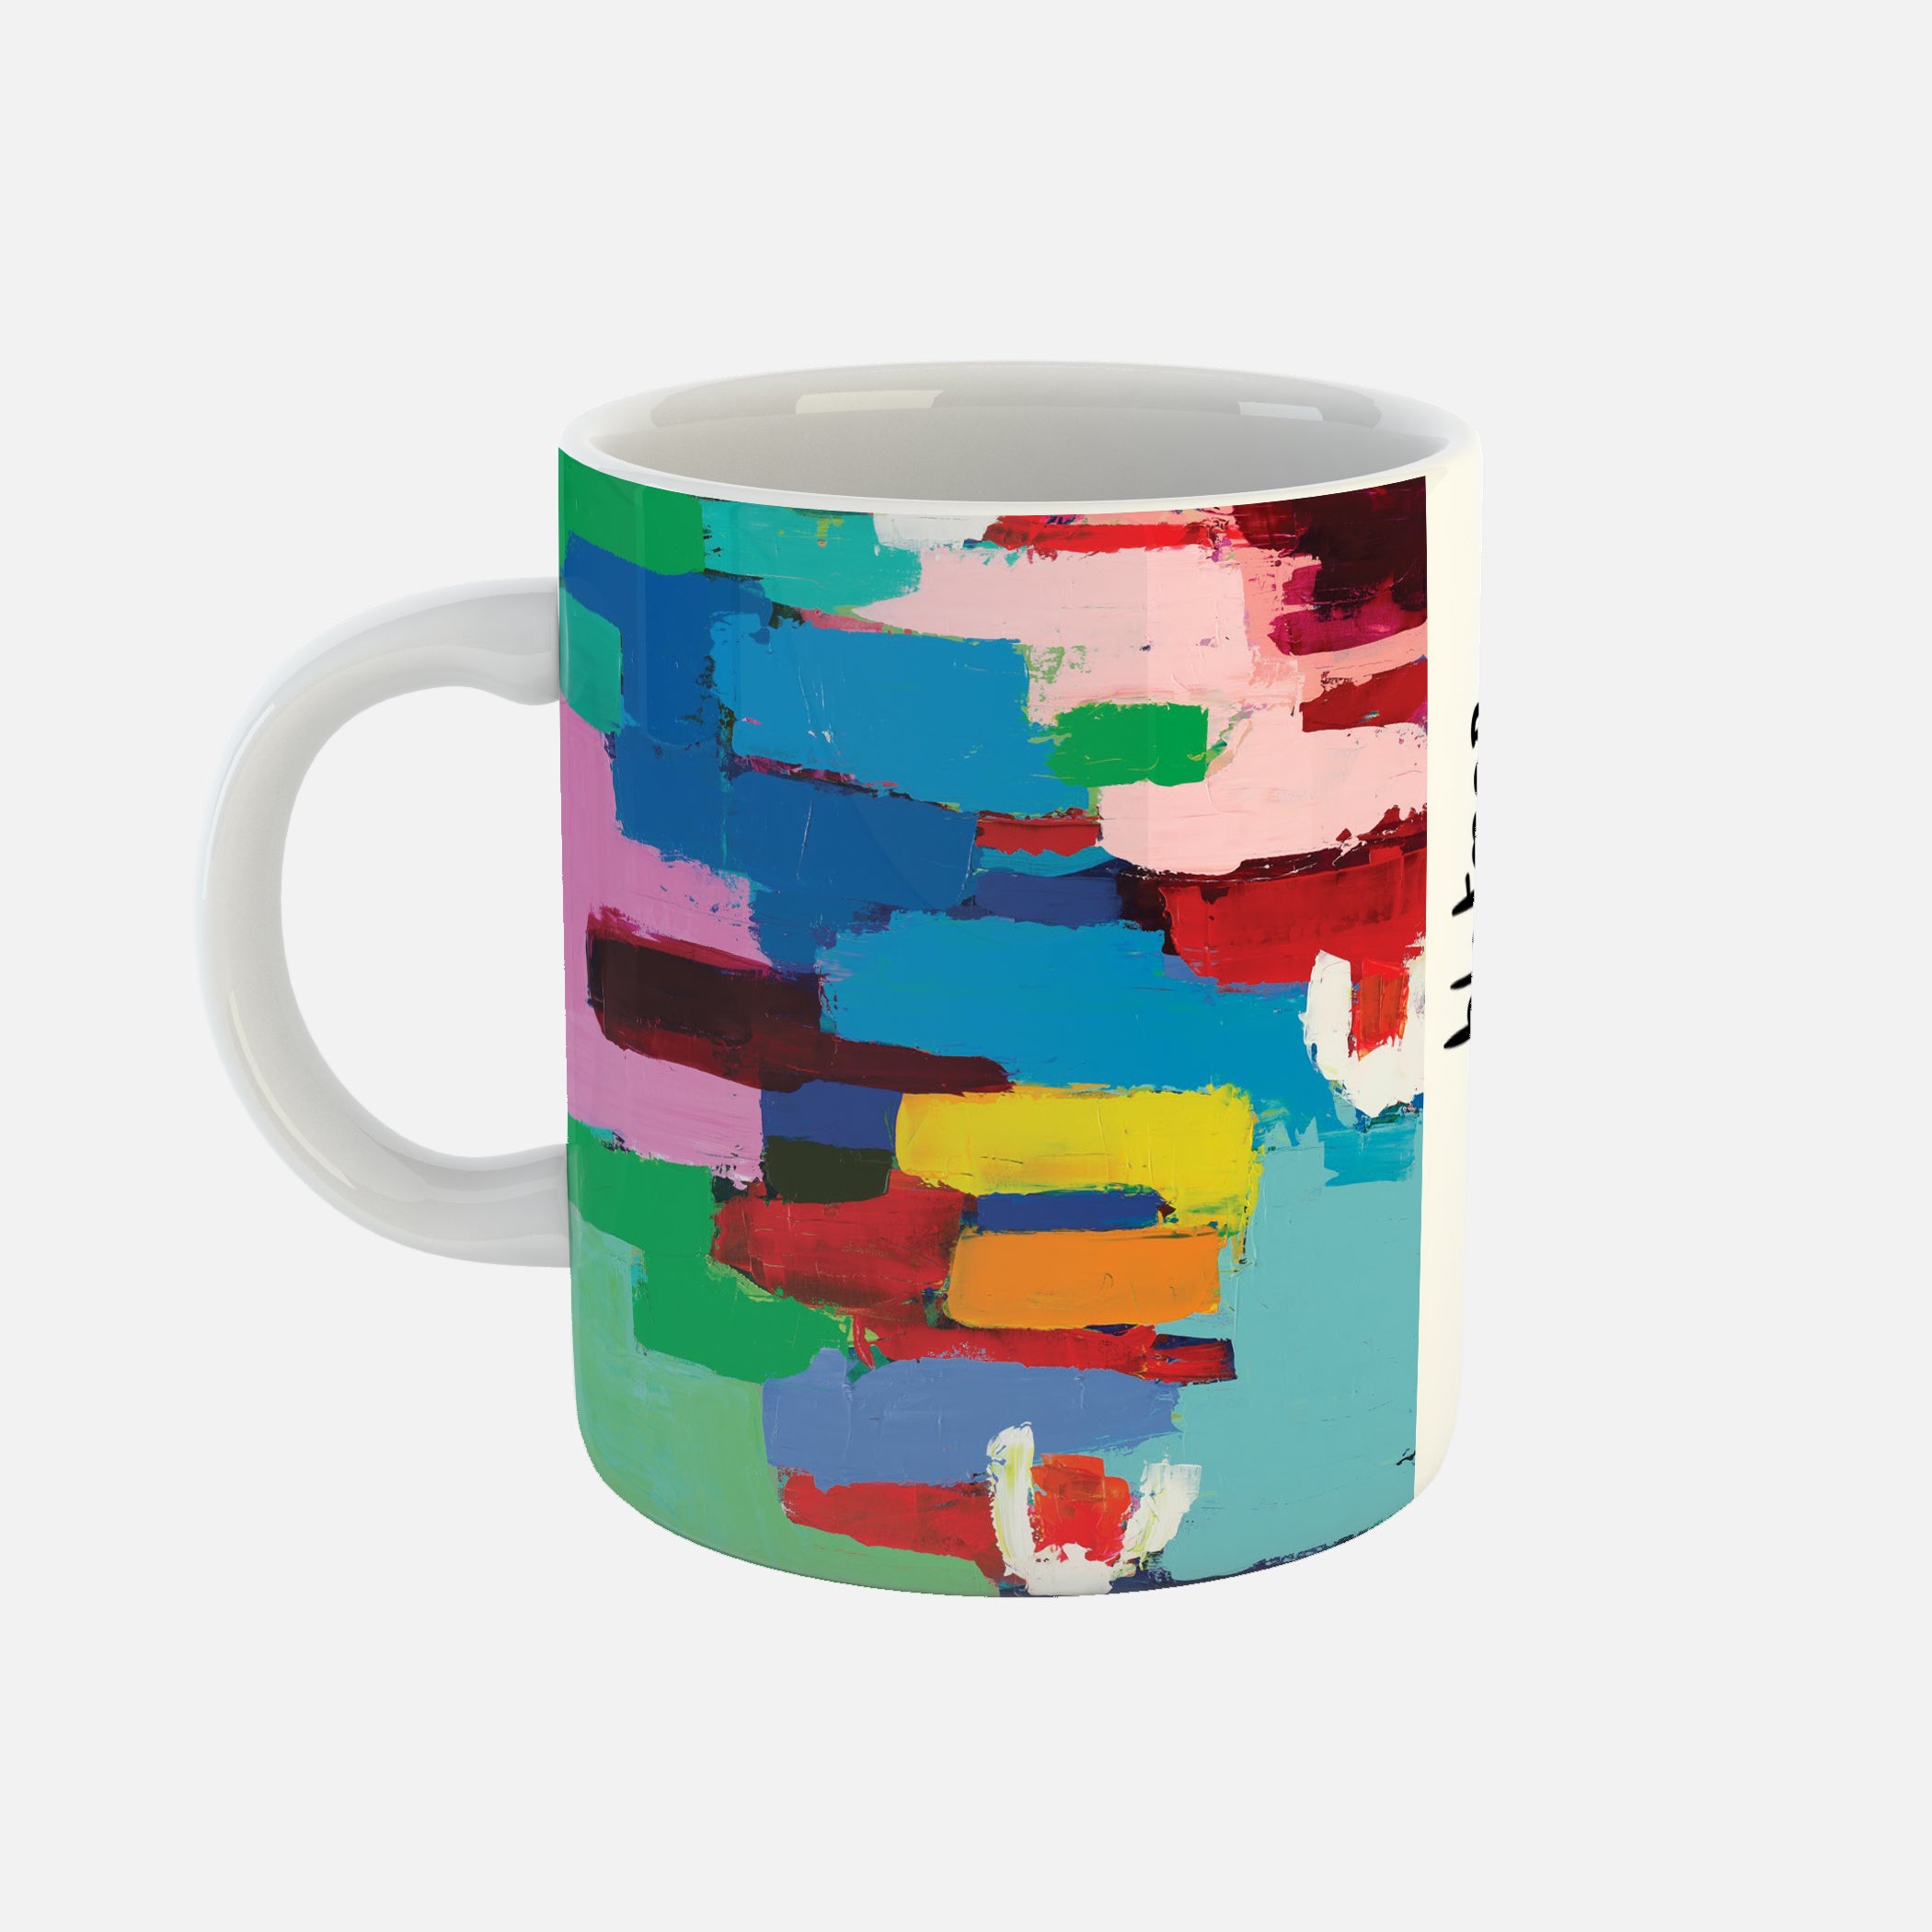 Lil - Ceramic Mug